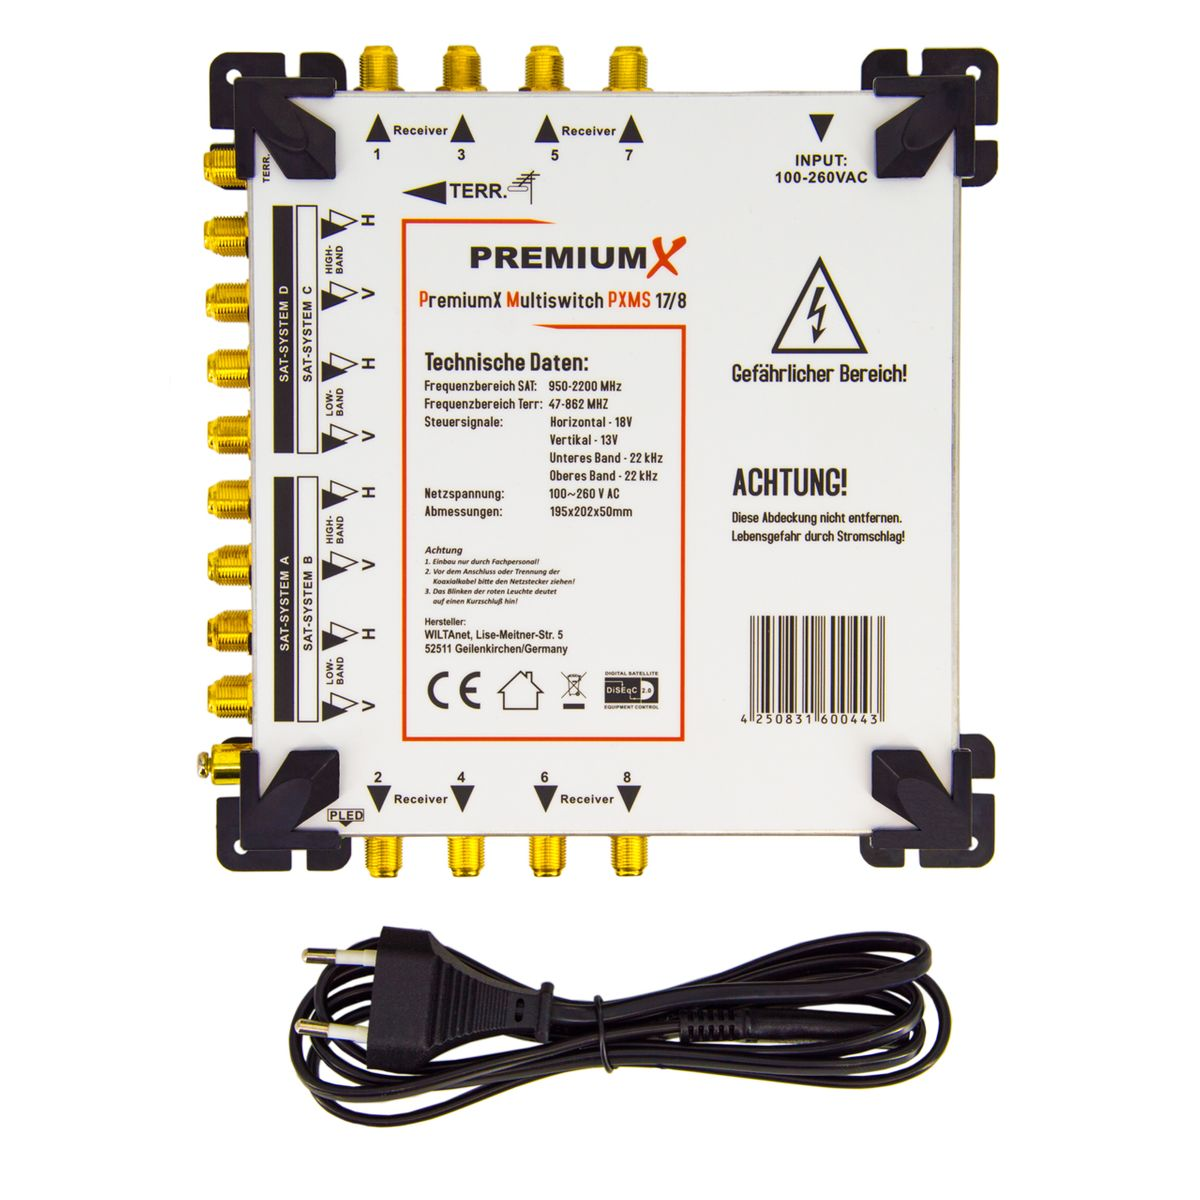 PREMIUMX F-Aufdrehhilfe SAT Multiswitch Multischalter Set 48x 17/8 F-Stecker Sat-Multischalter